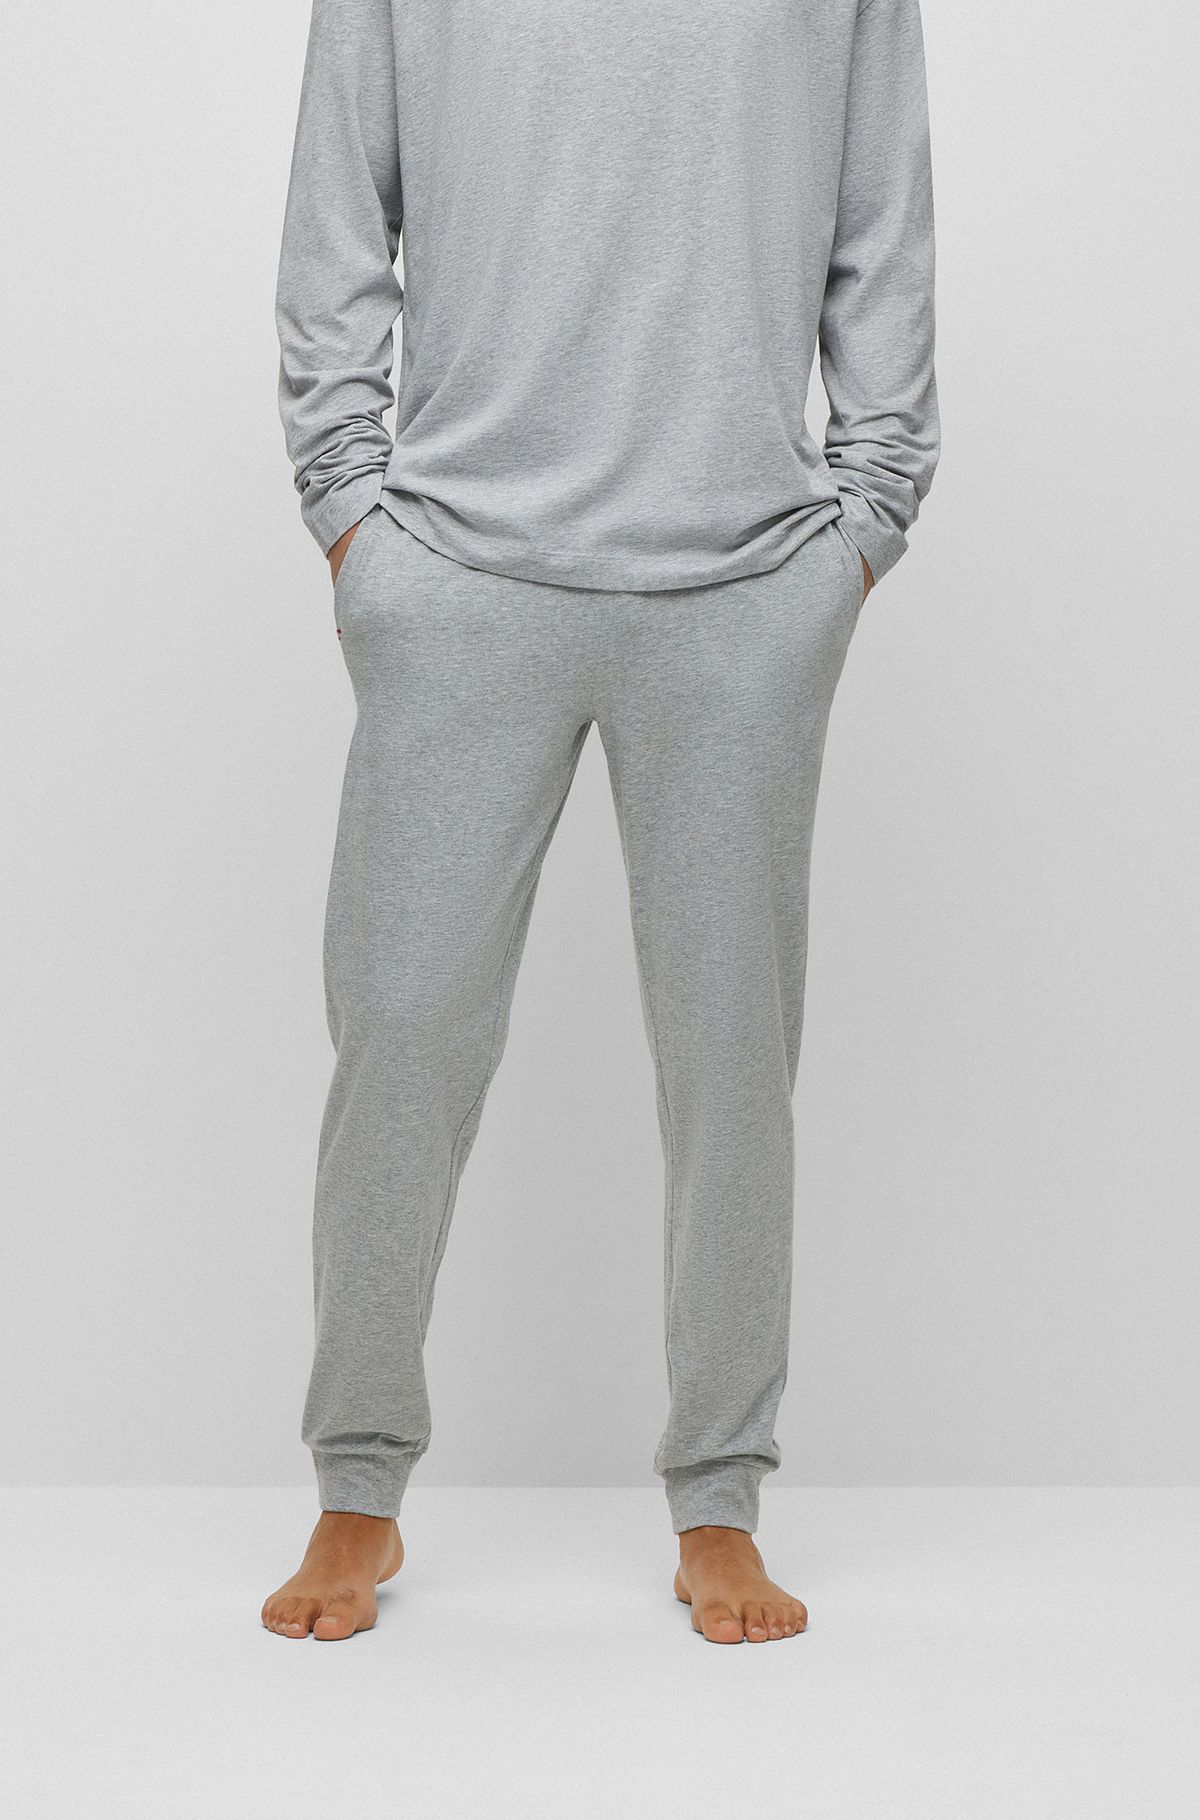 Nightwear by Grey Modern for HUGO BOSS Men